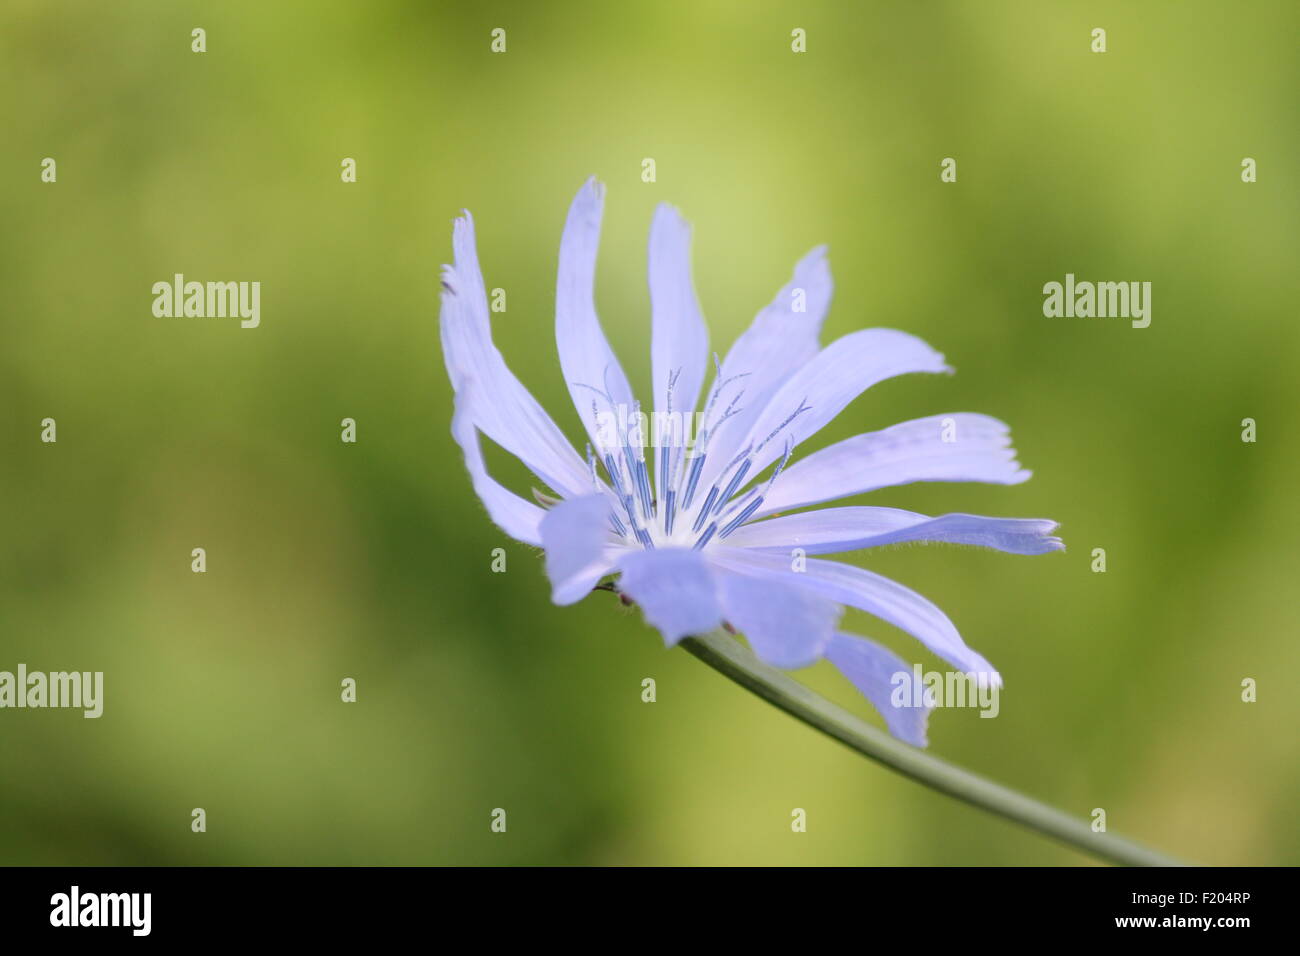 Gemeinsamen Chicorée, Cichorium Intybus, ist eine etwas holzig, mehrjährige krautige Pflanze in der Regel mit leuchtend blauen Blüten. Stockfoto